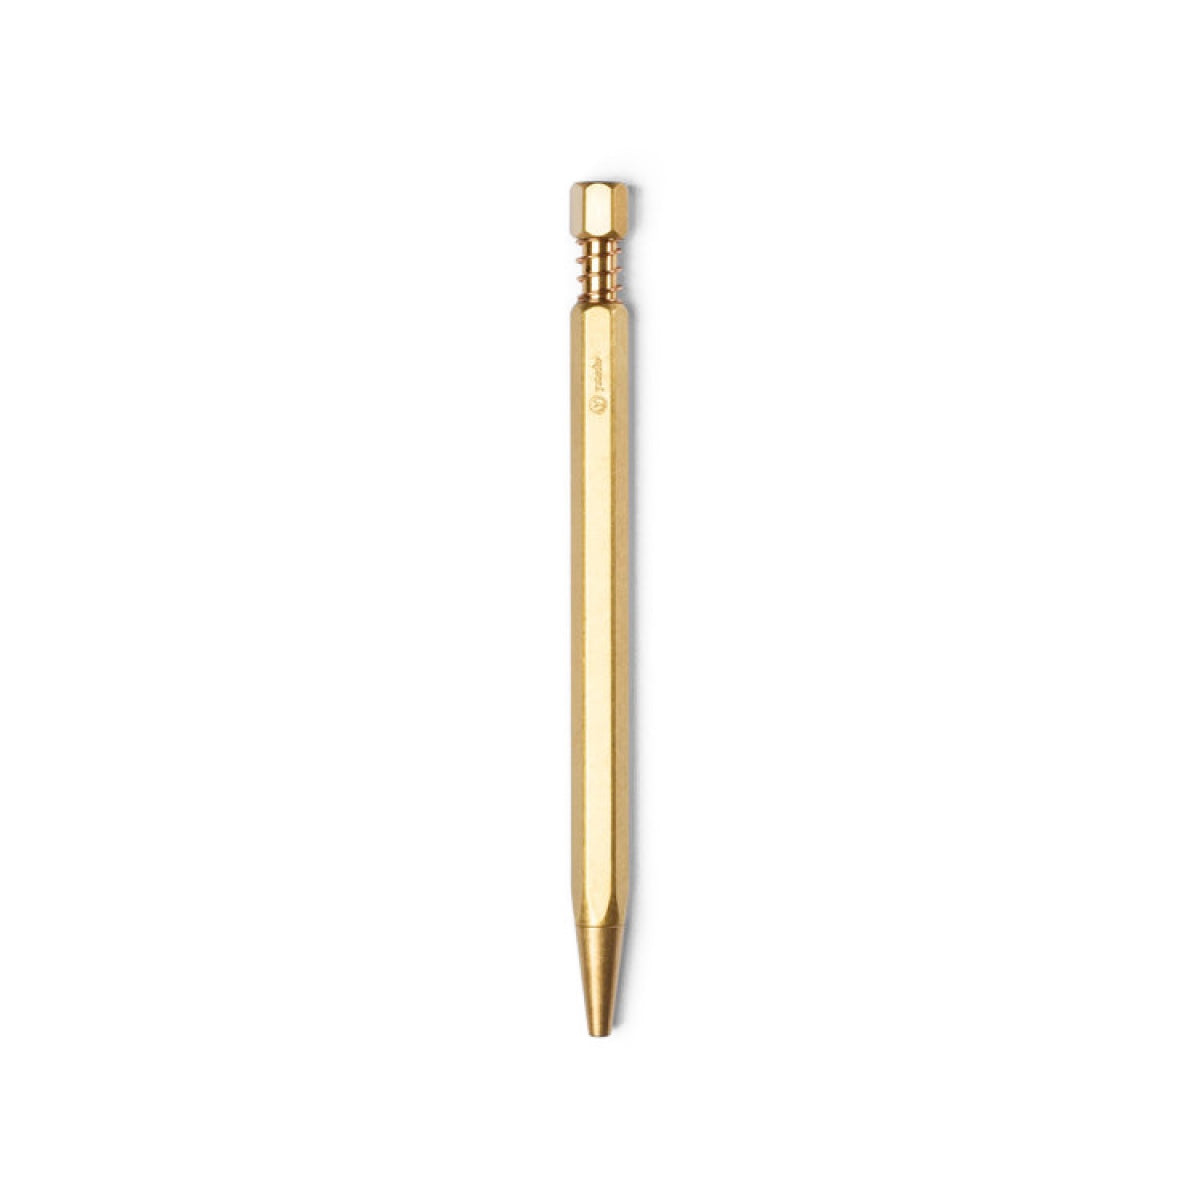 Brass Ballpoint Pen by Ystudio